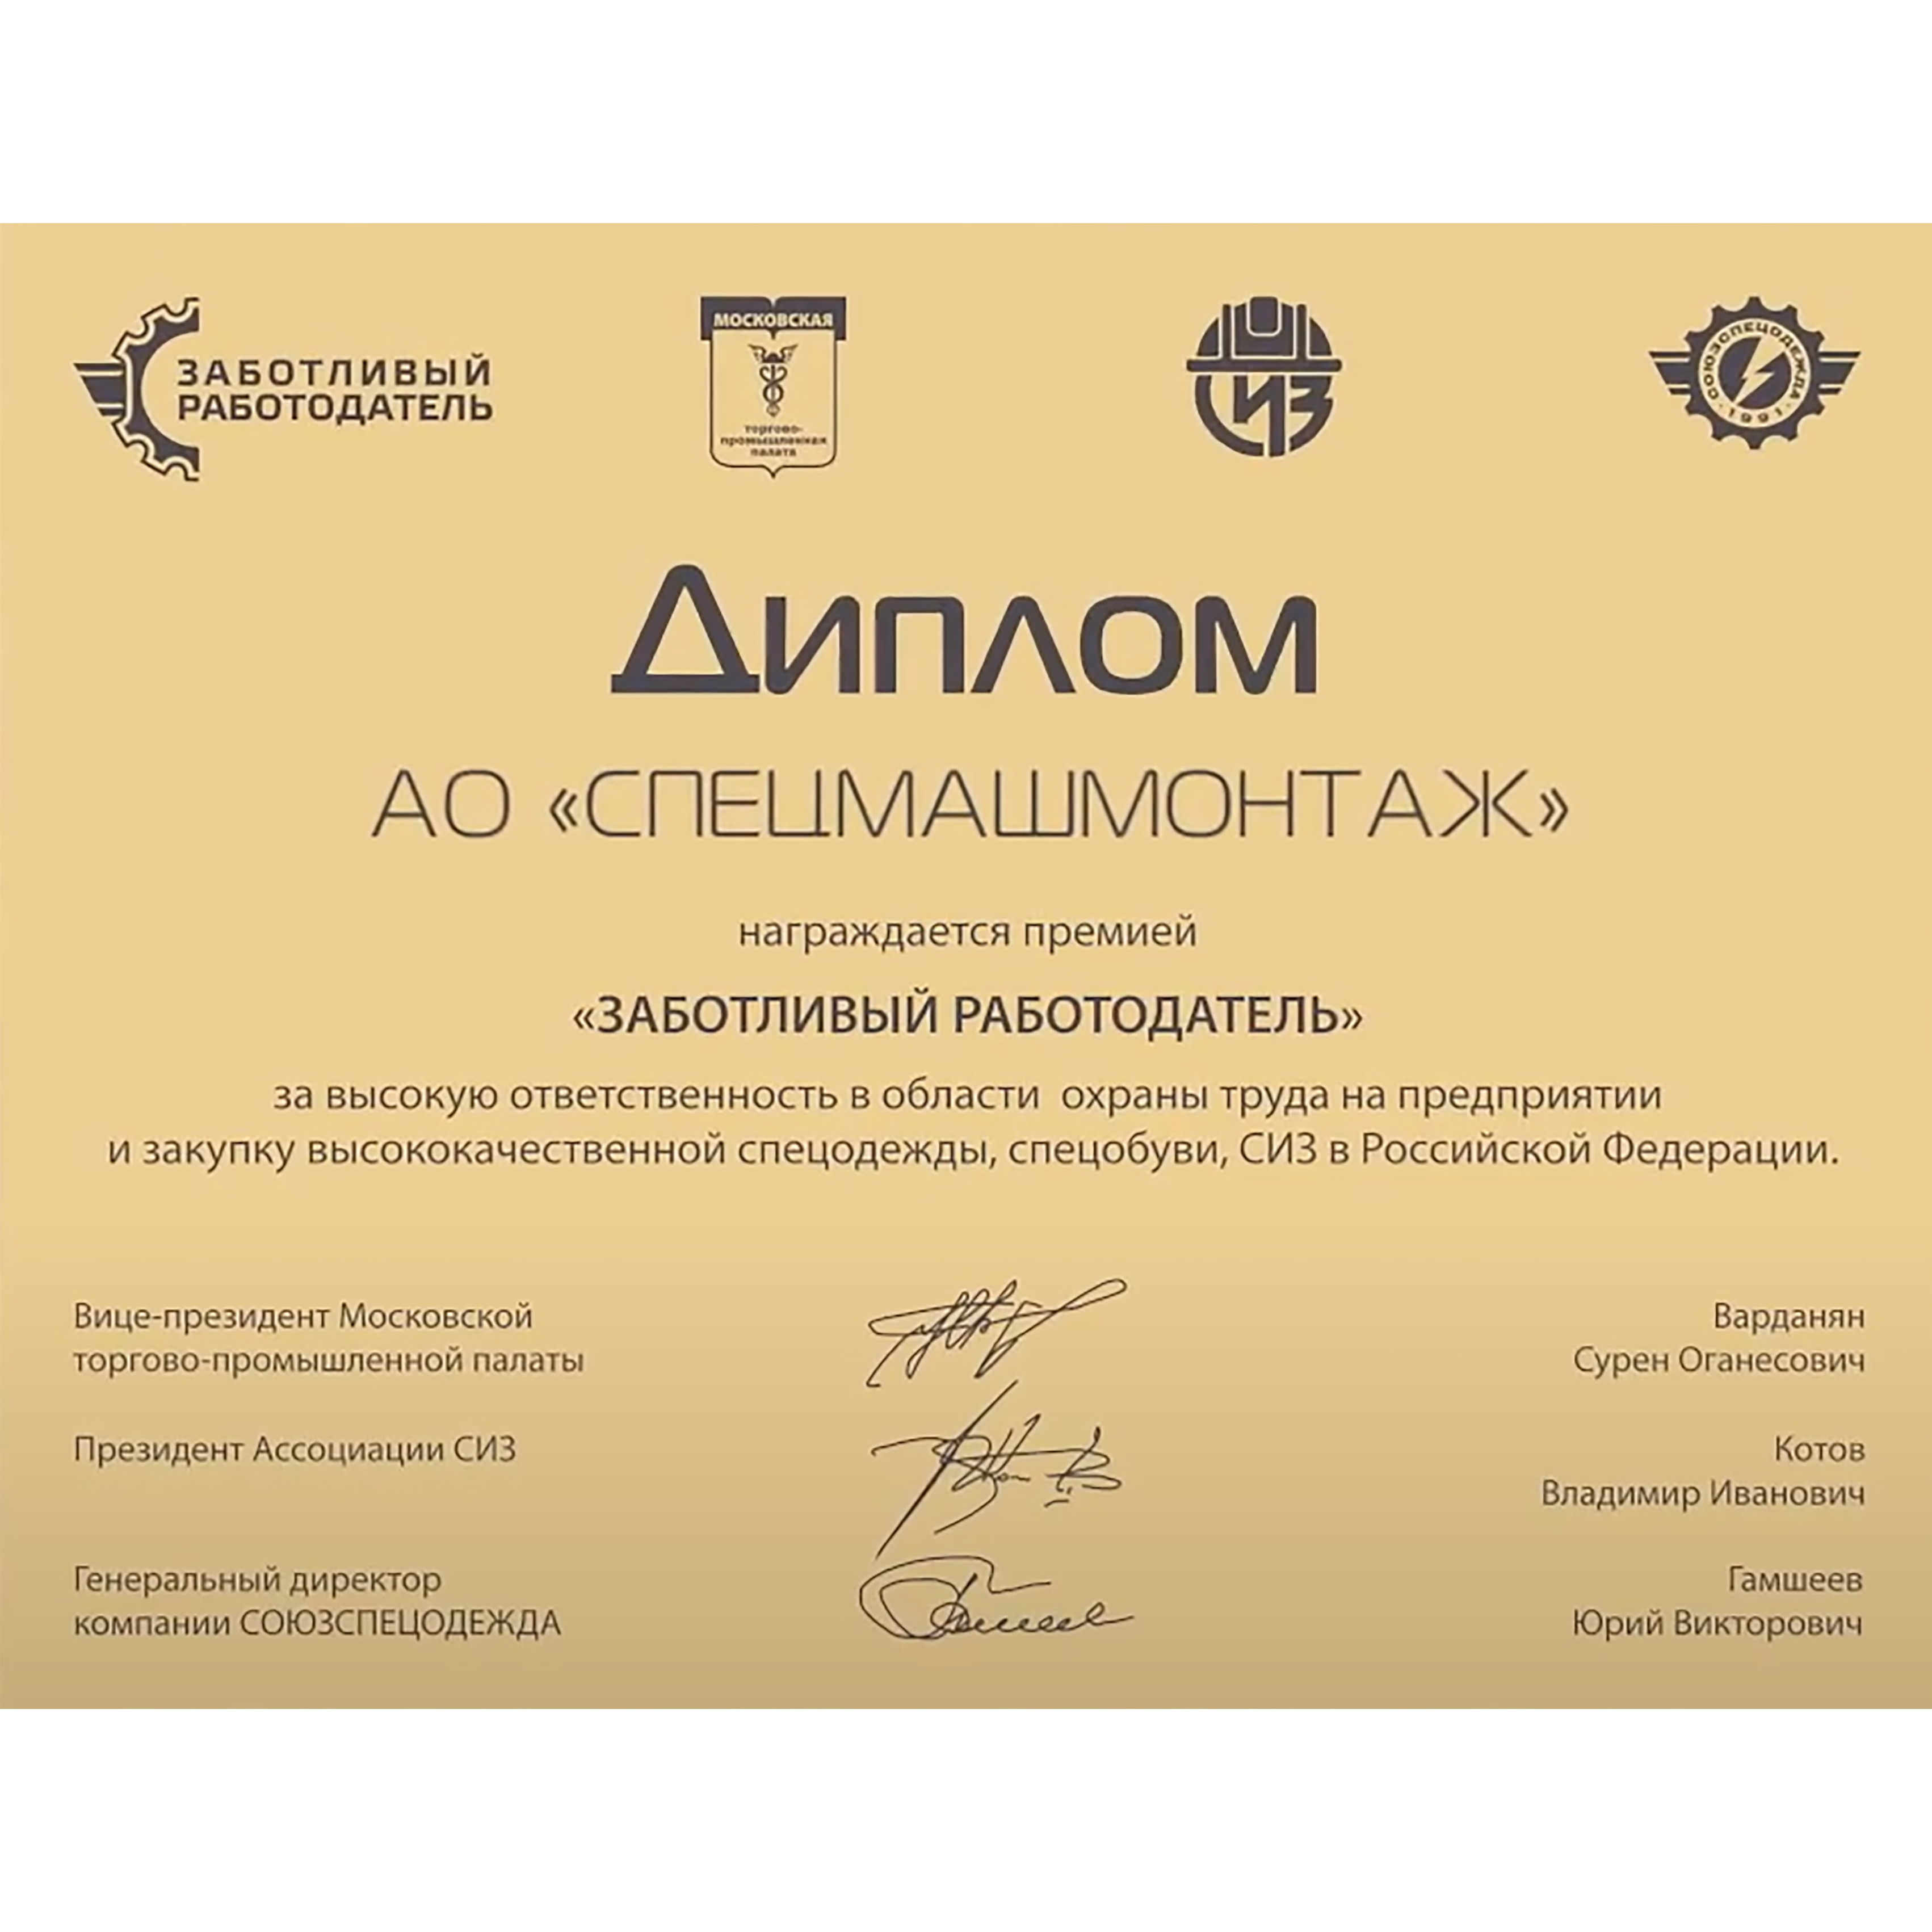 АО «Спецмашмонтаж» награждено премией «Заботливый работодатель»